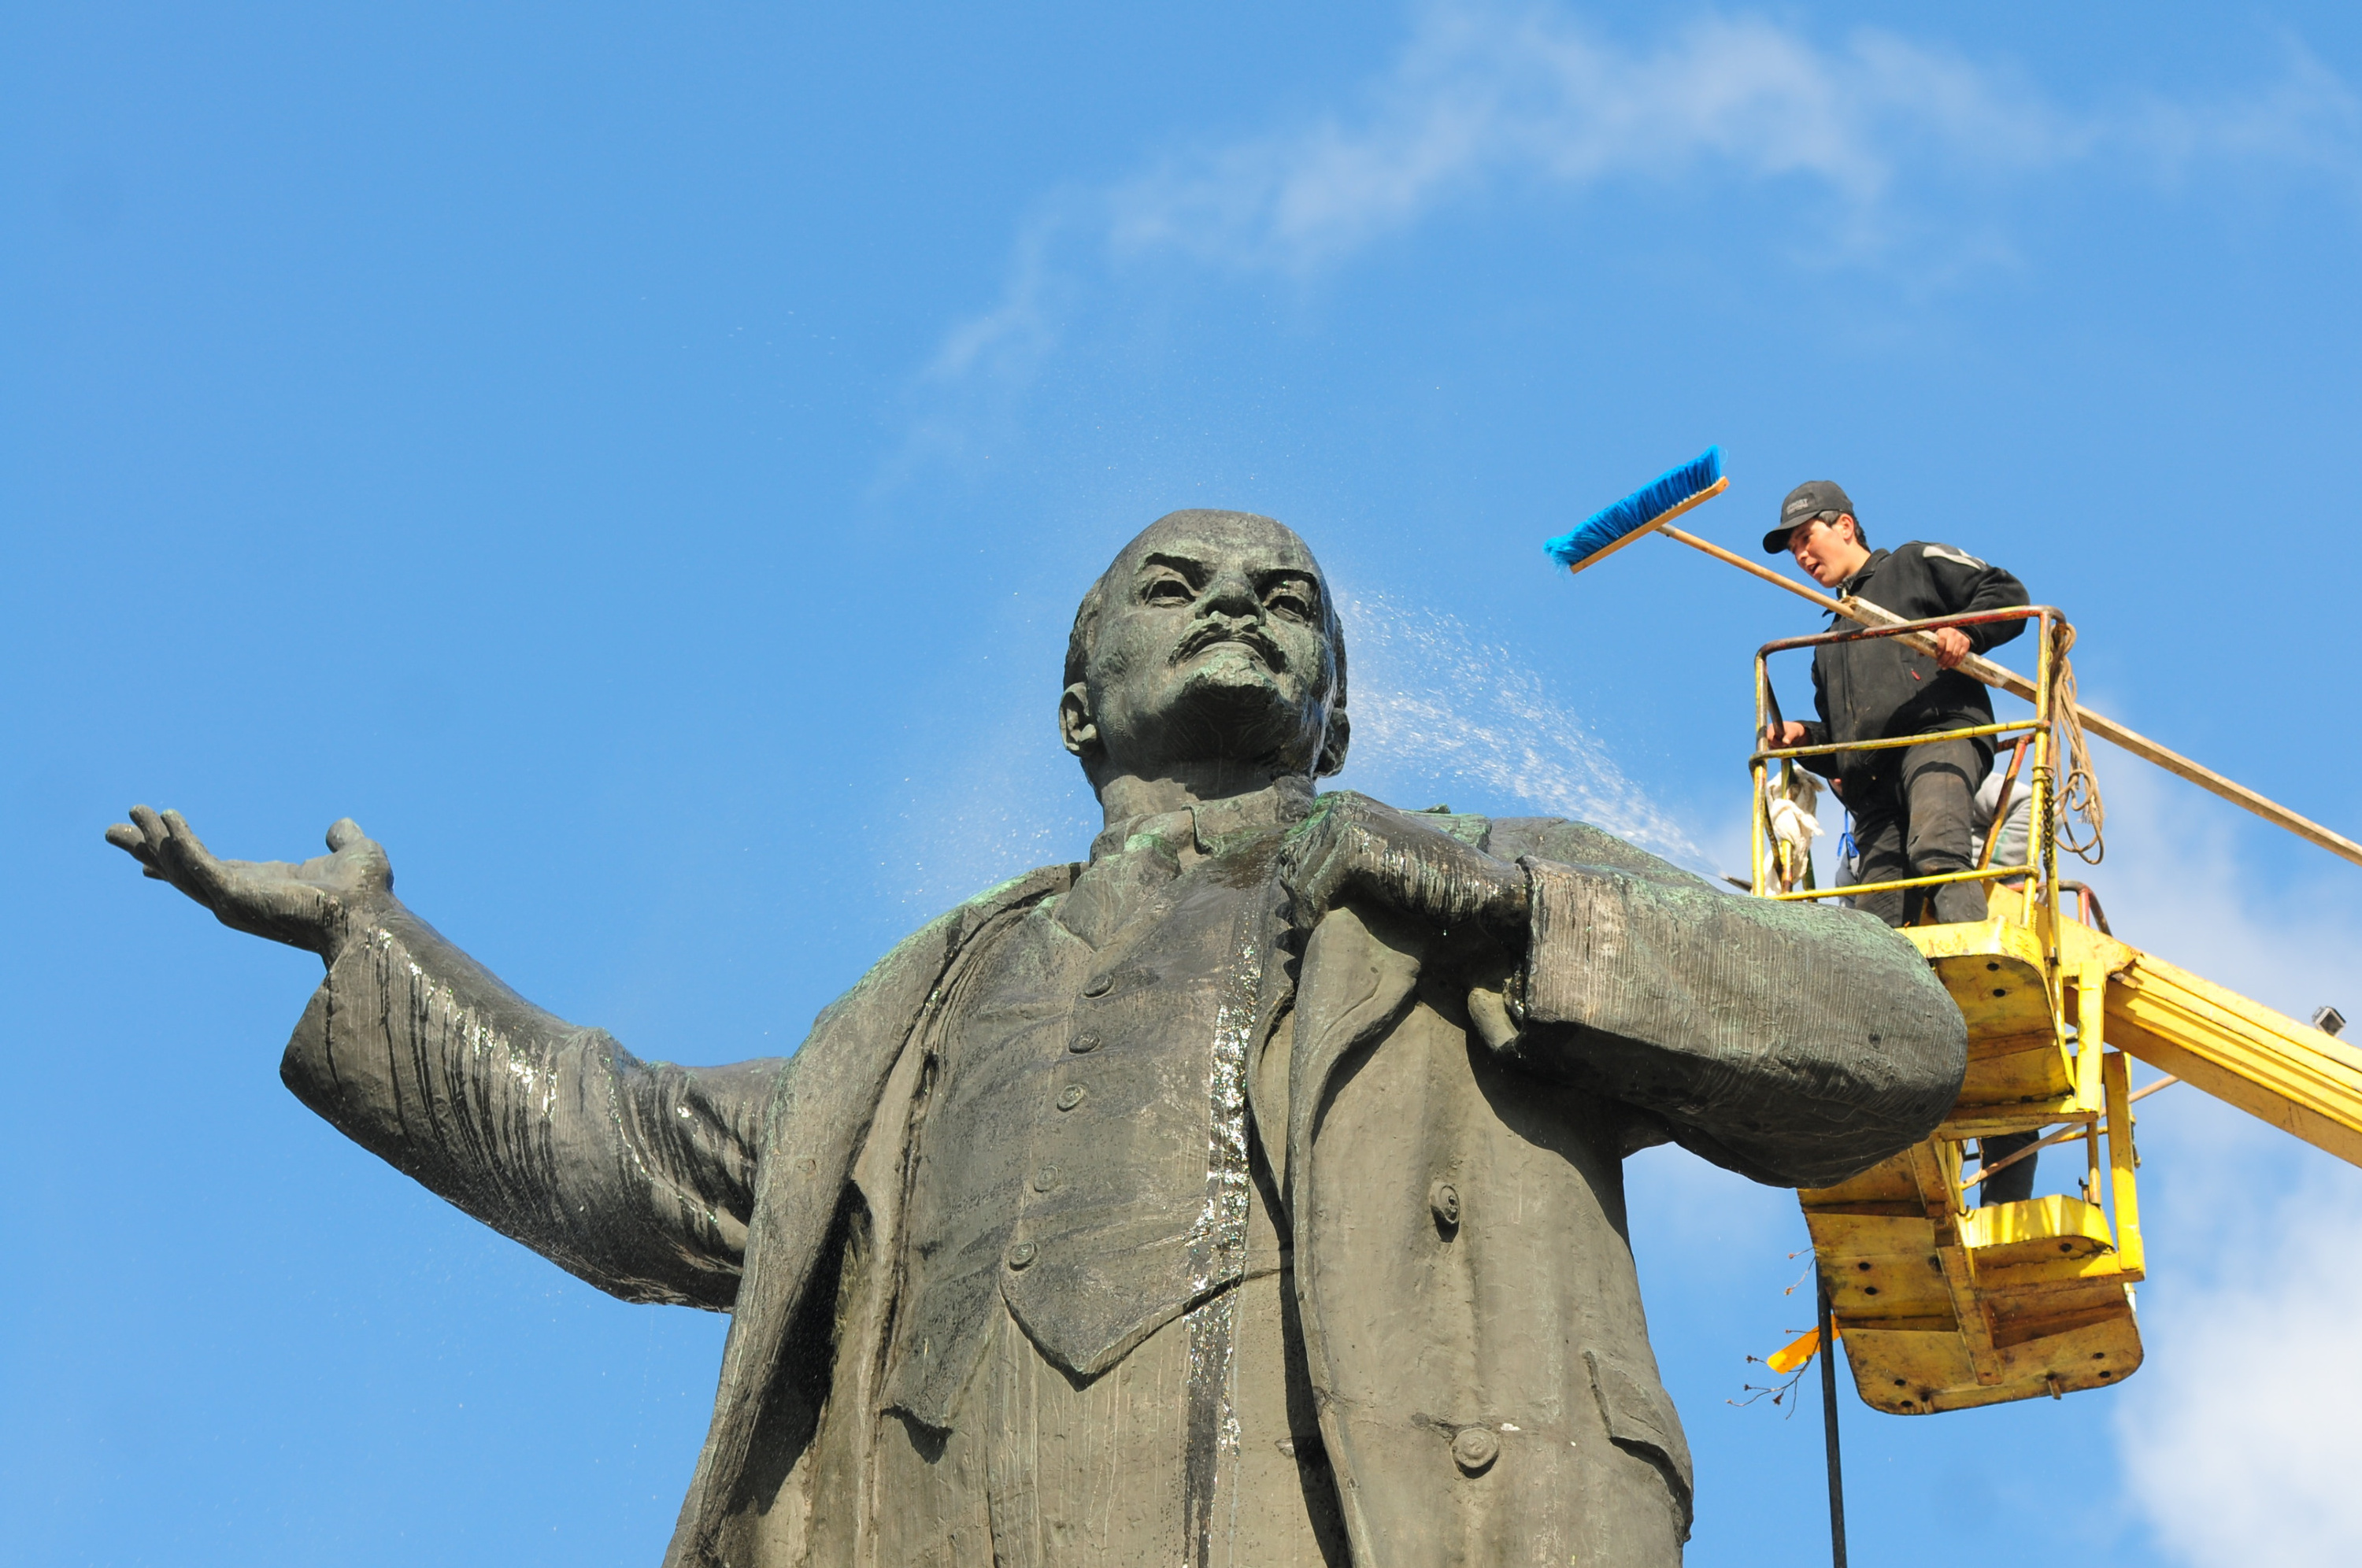 Ленин на площади 1905 года иногда принимает душ, но в этом году к юбилею его не помыли: самоизоляция, до того ли нам теперь